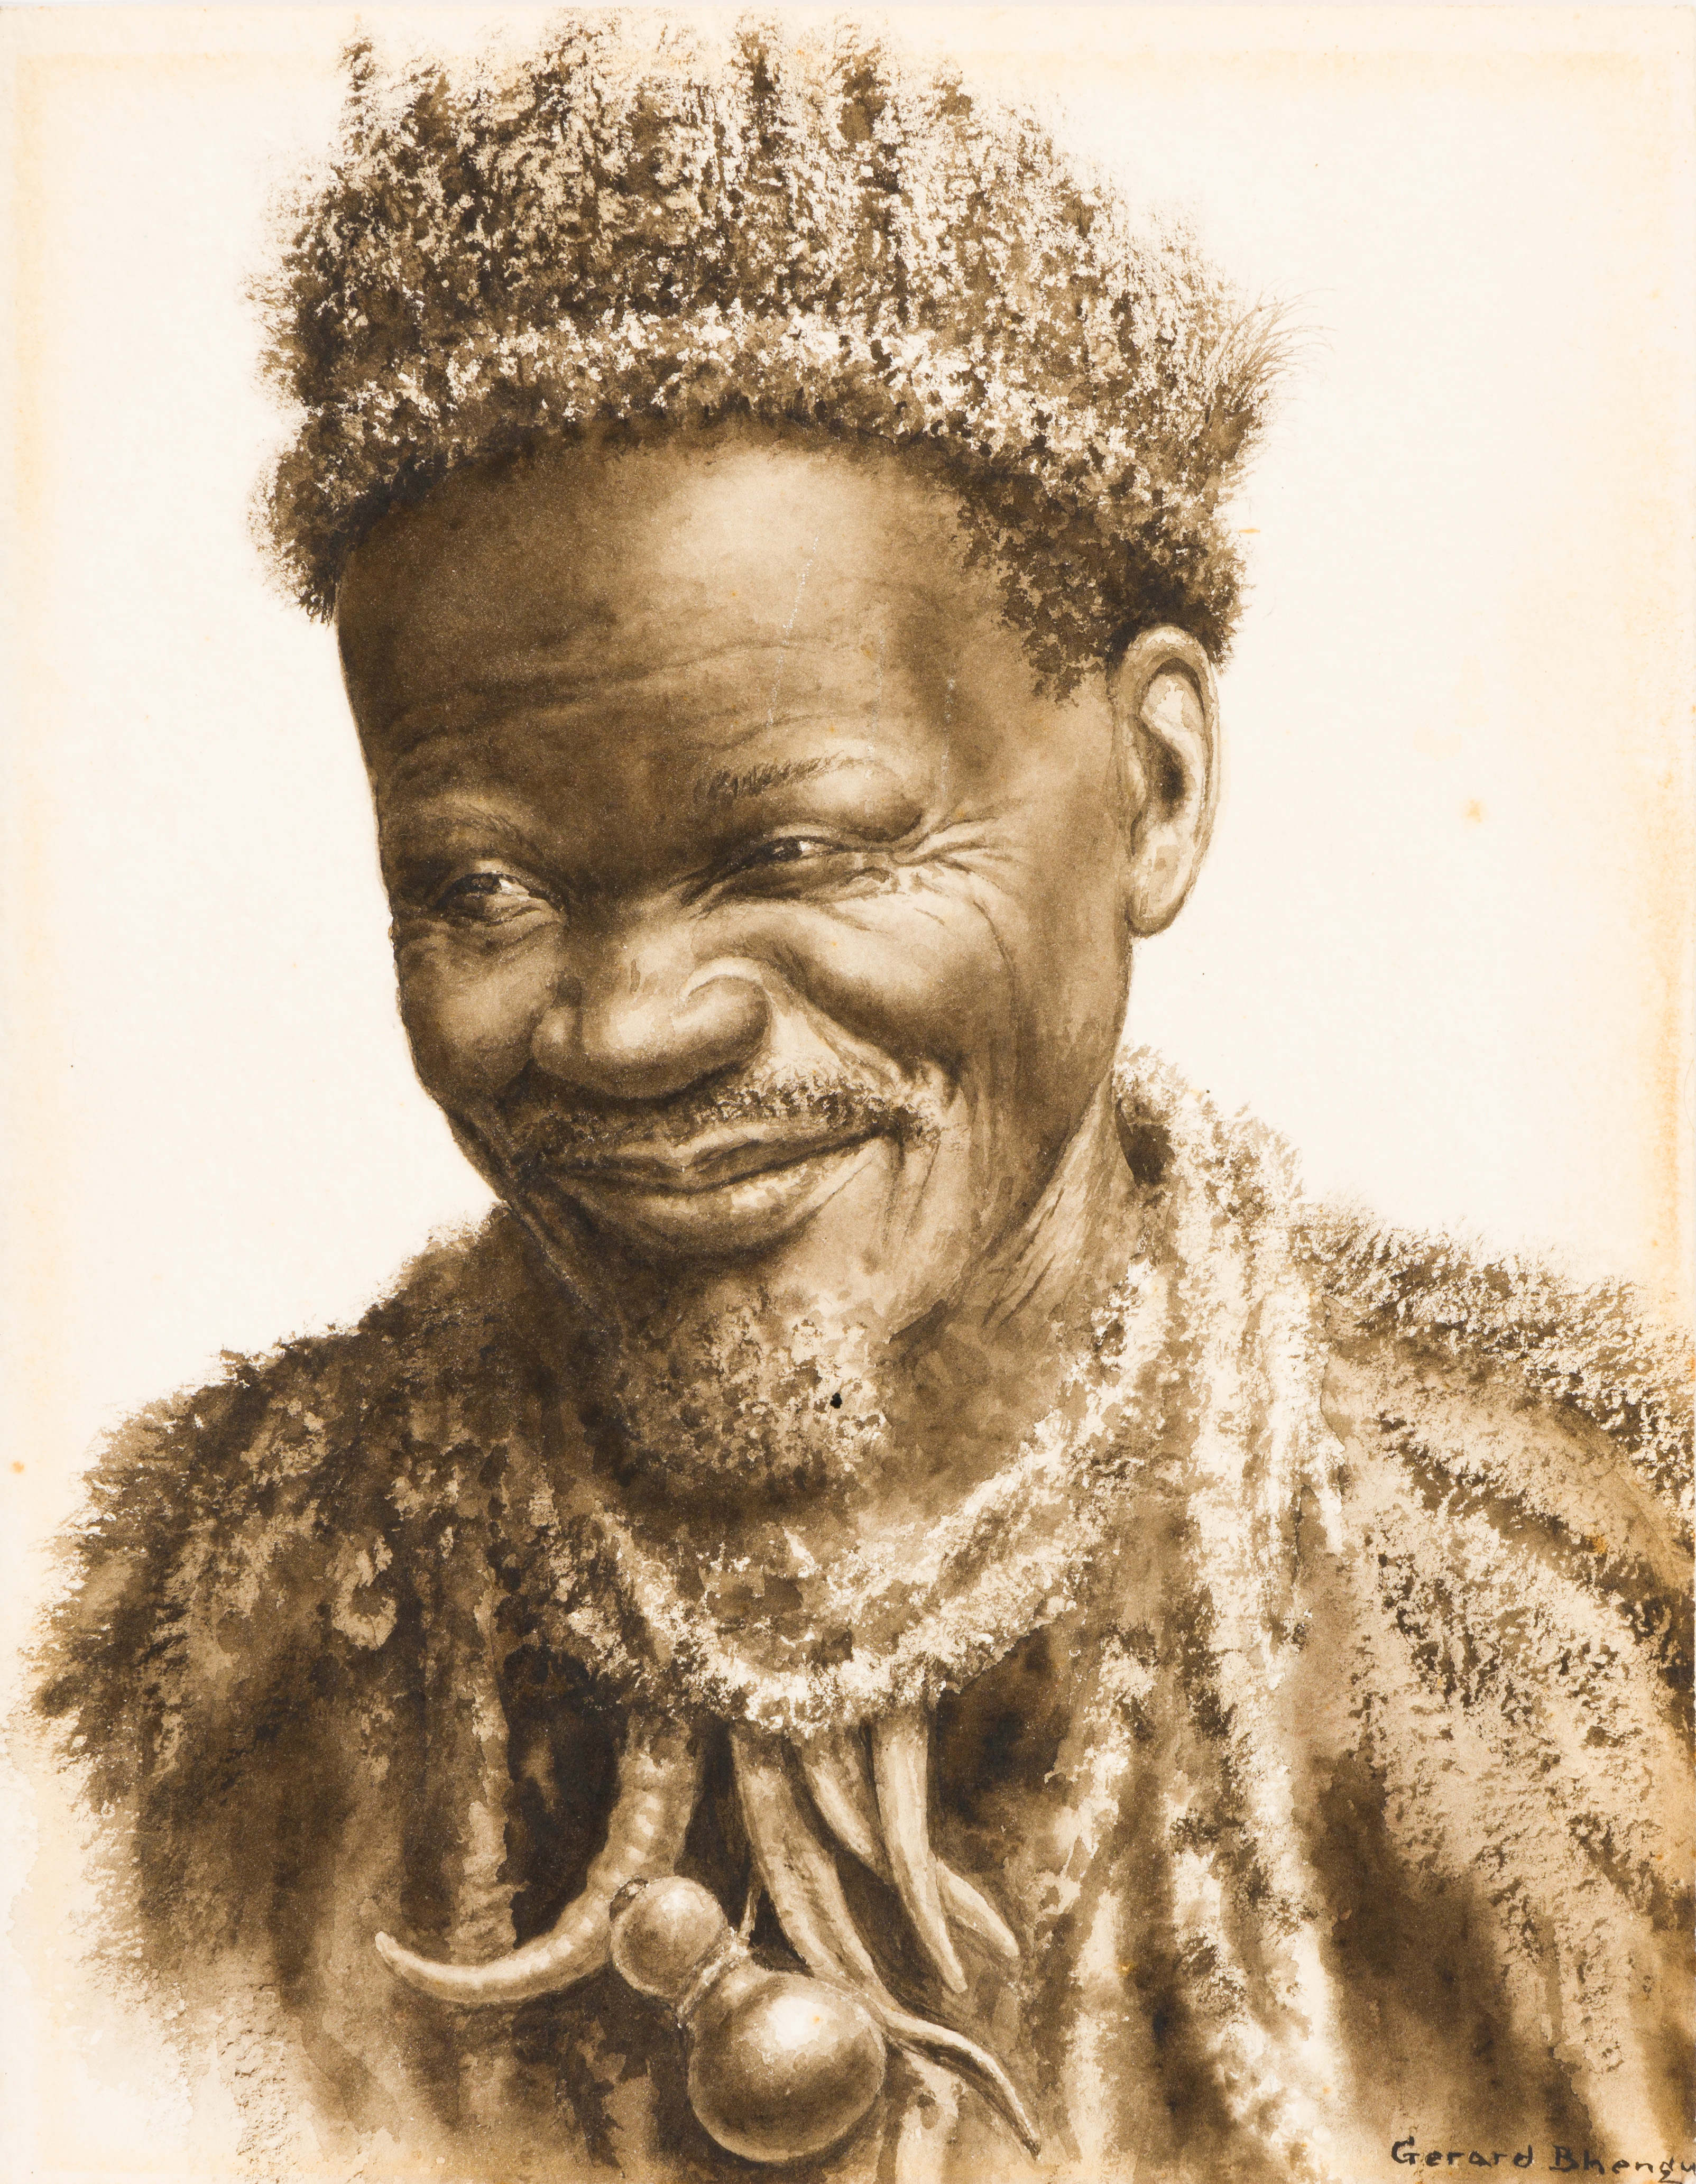 Gerard Bhengu; Portrait of an Old Man